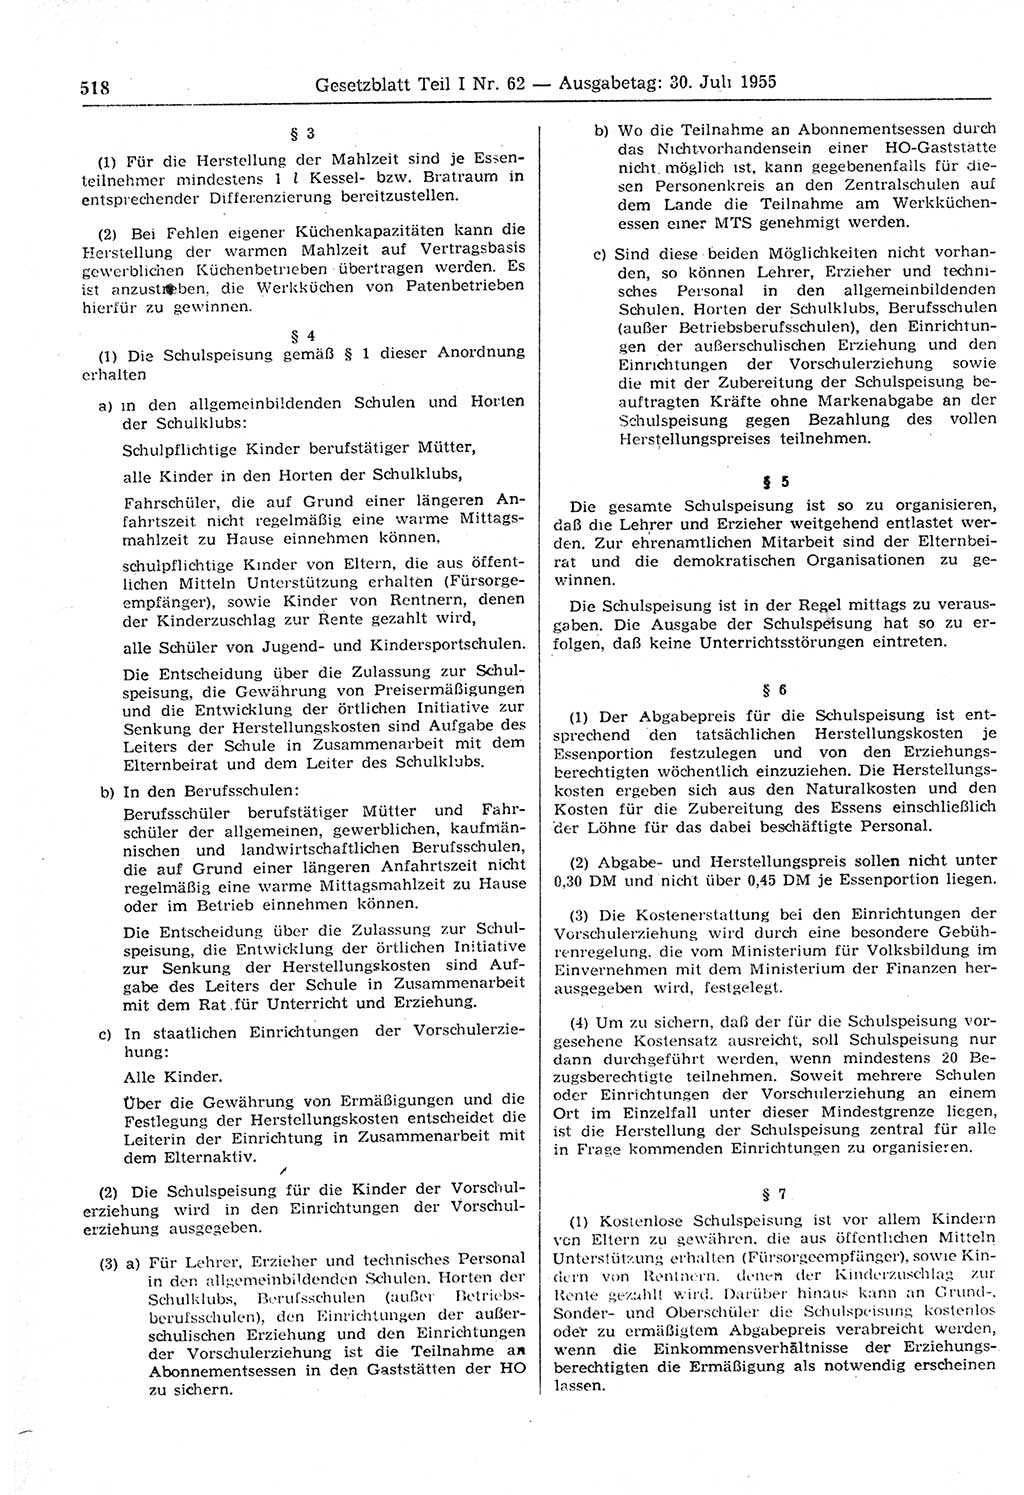 Gesetzblatt (GBl.) der Deutschen Demokratischen Republik (DDR) Teil Ⅰ 1955, Seite 518 (GBl. DDR Ⅰ 1955, S. 518)